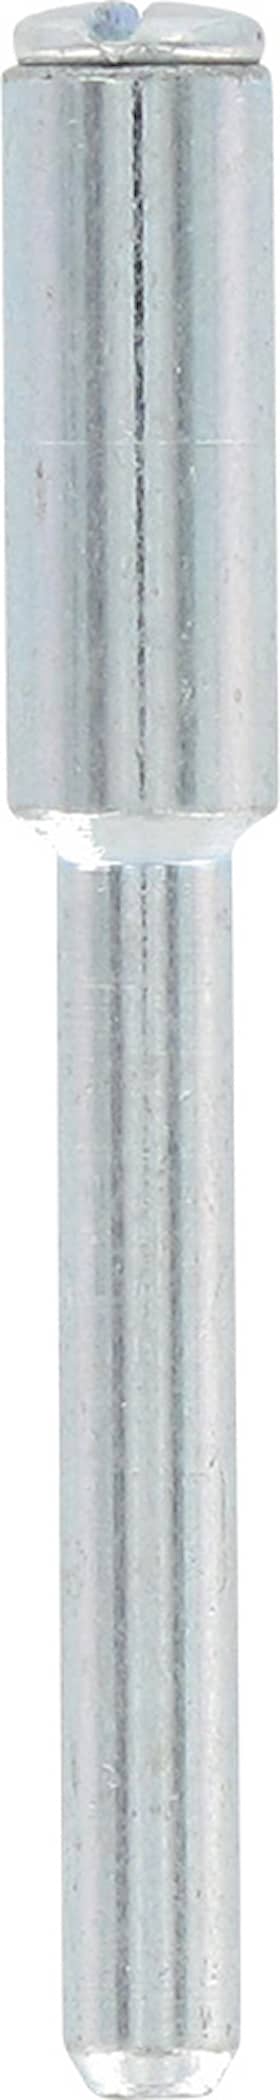 Dremel spindelsett 402JA 3,2 mm 4 stk